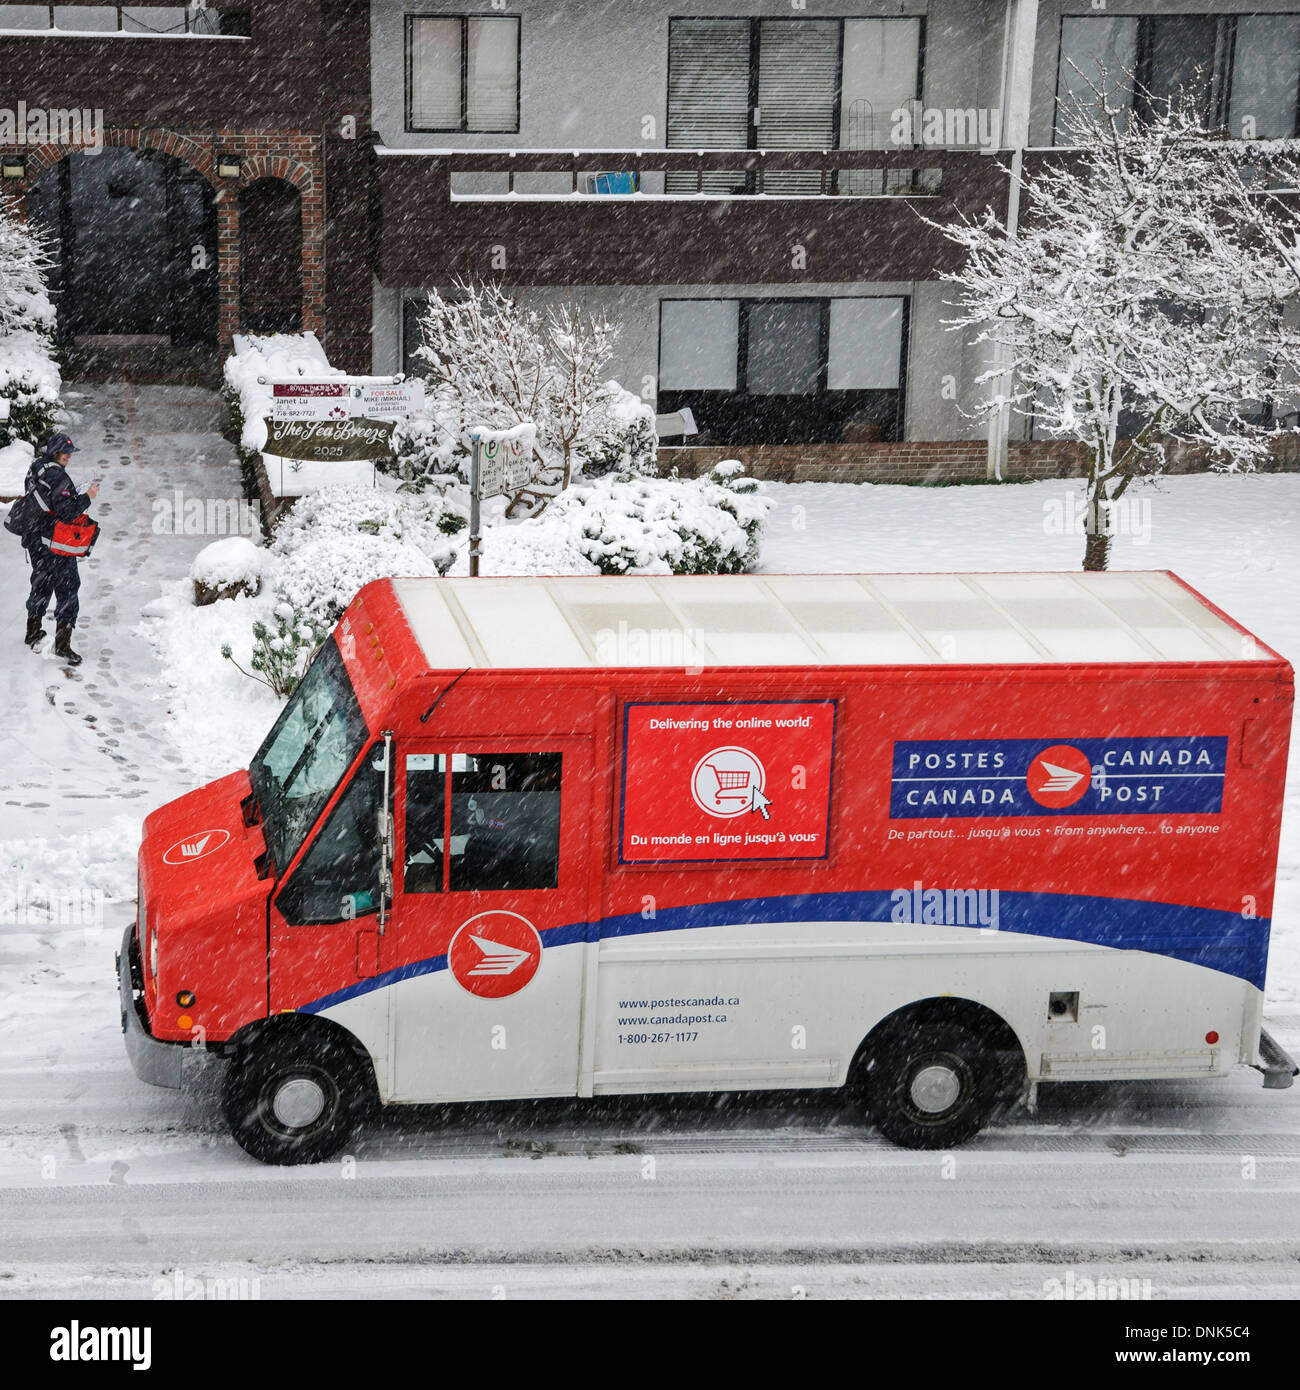 E-Mail-Übermittlung an einem verschneiten Tag in Vancouver. Briefträger spricht kurz mit einem anderen Canada Post-Arbeiter in einem Lieferwagen. Stockfoto